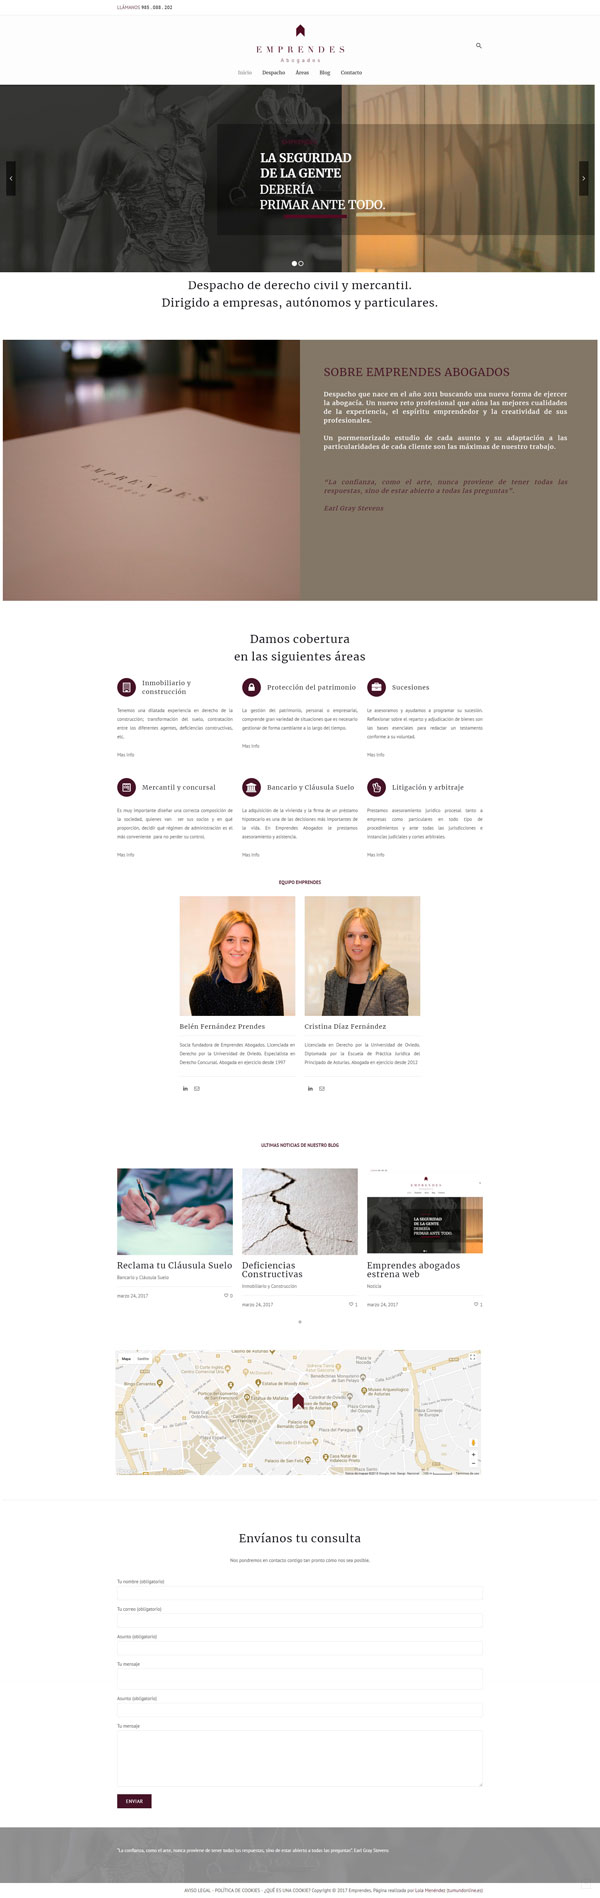 diseño página web para despacho abogados